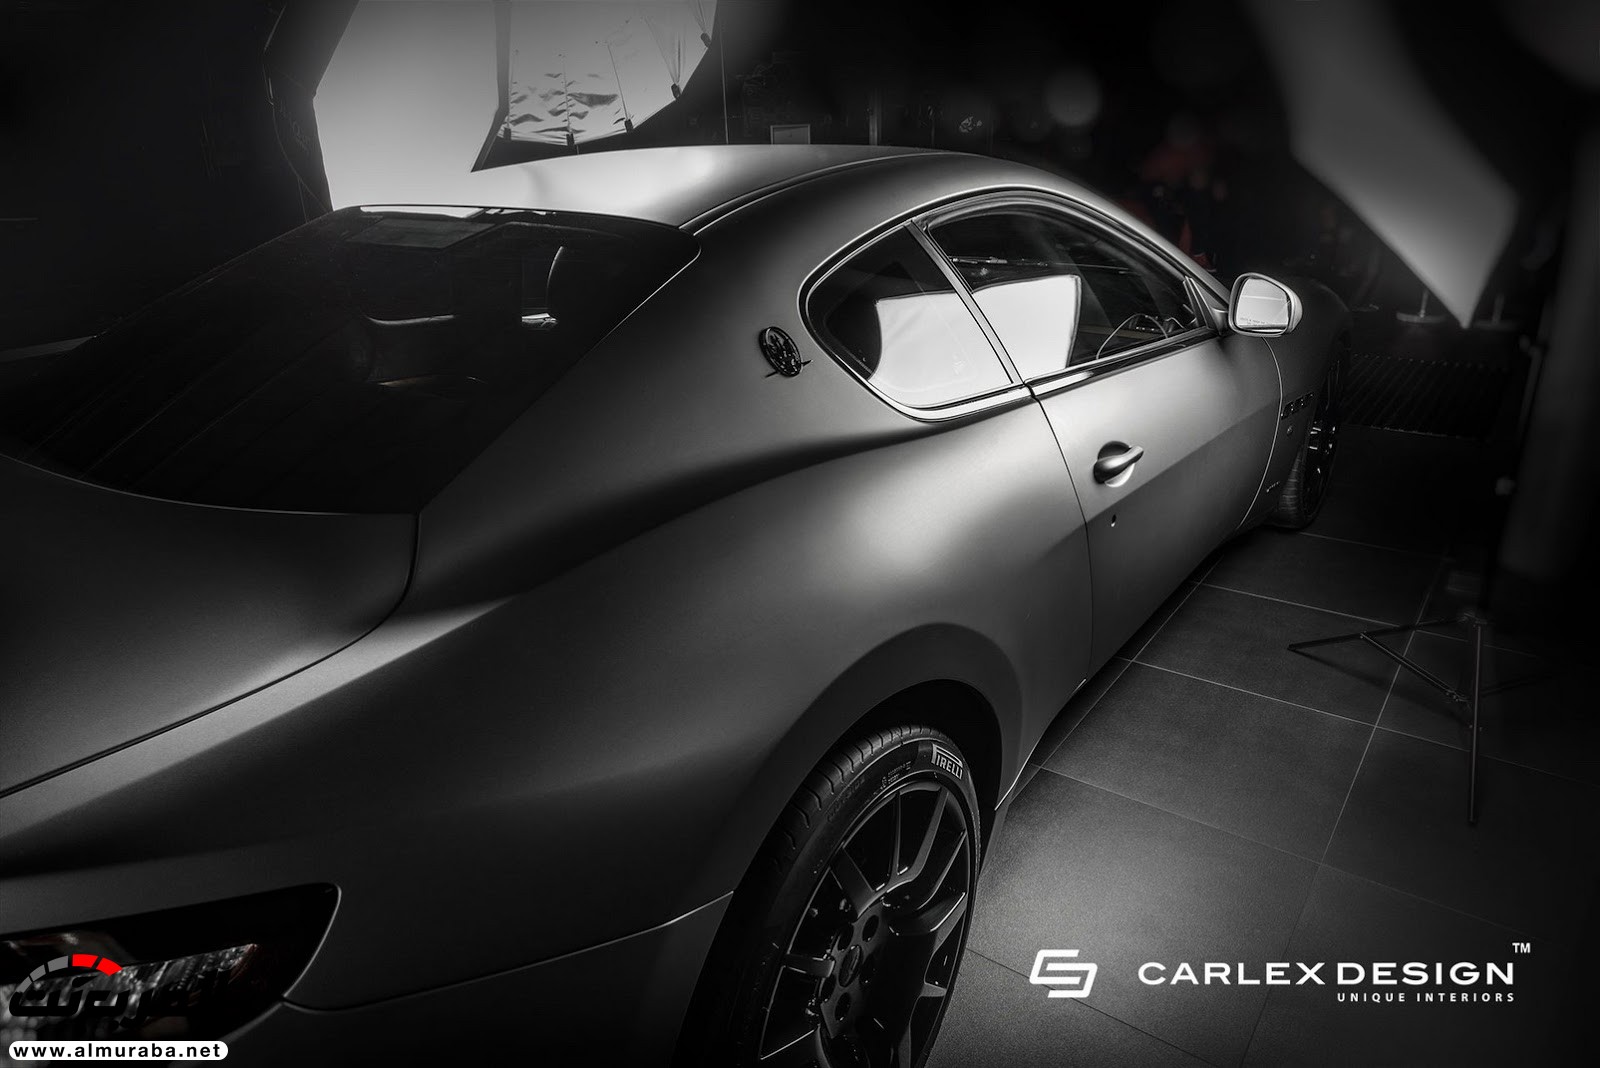 كارلكس تكشف عن داخل "مازيراتي" غران توريزمو التخصيصية Maserati 38